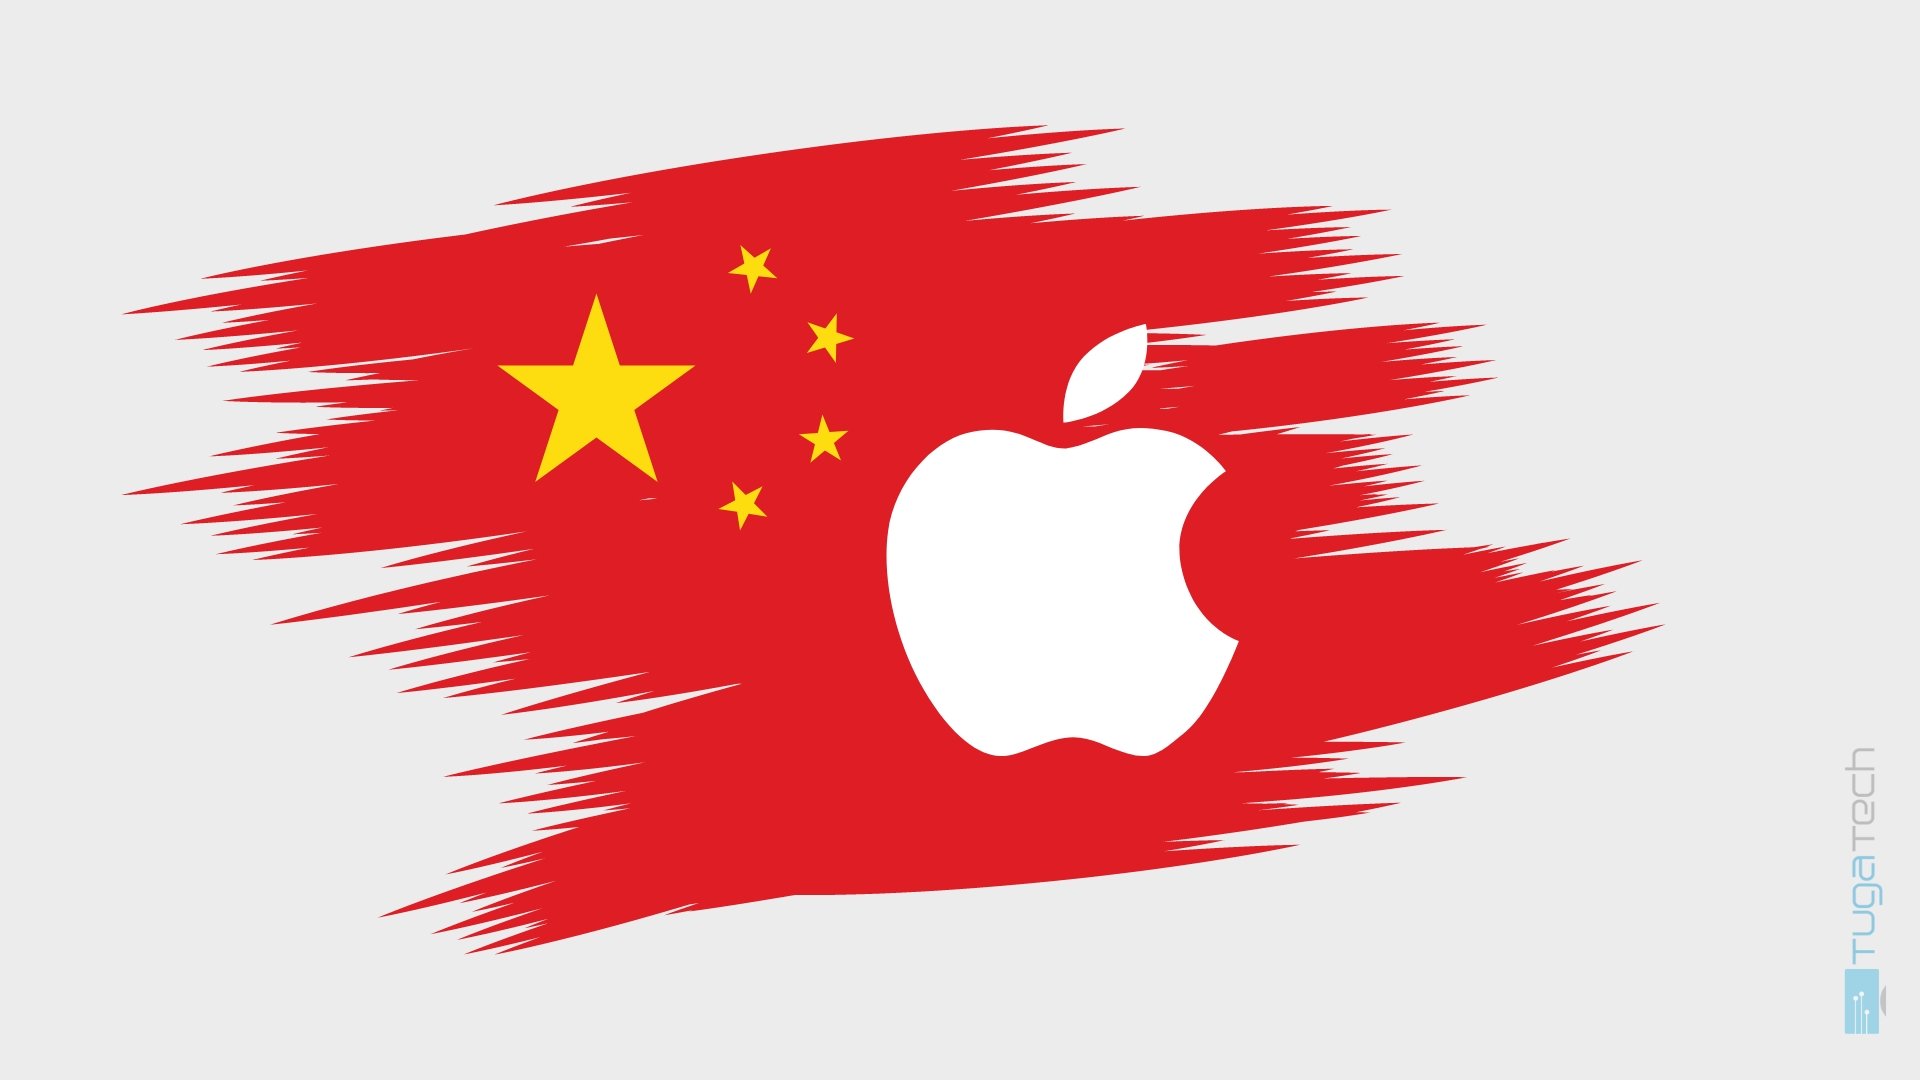 Apple na China